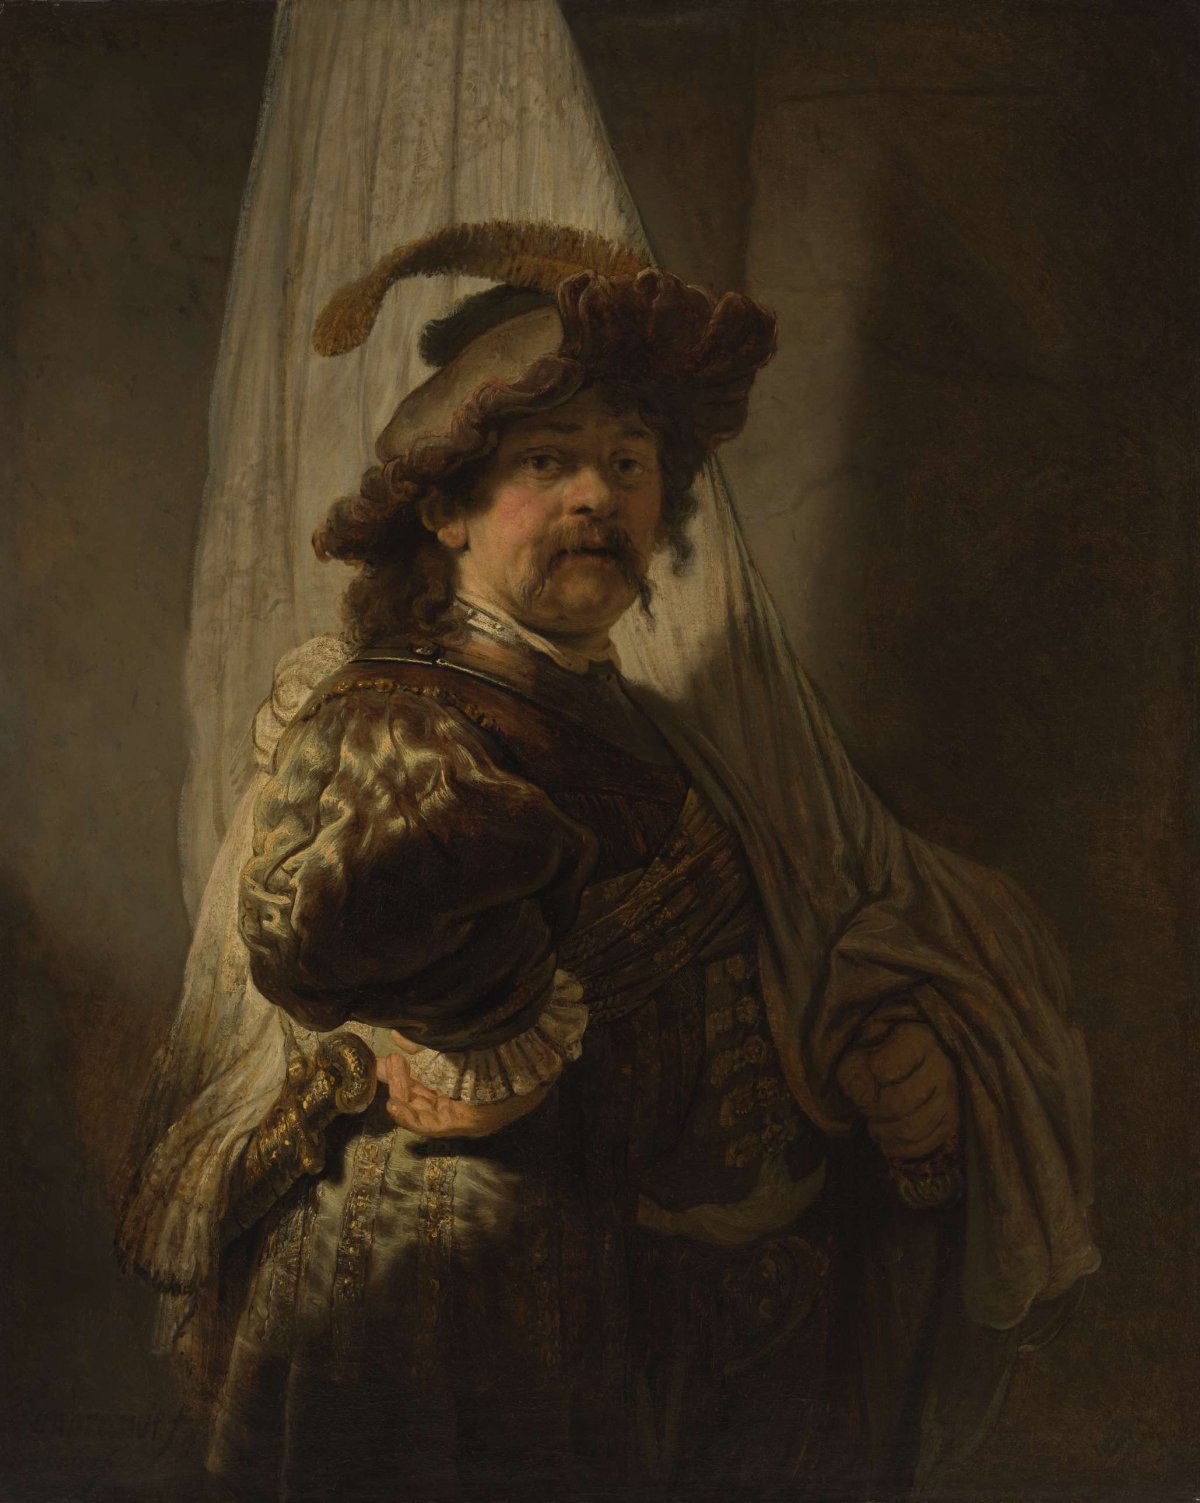 The Standard Bearer, Rembrandt van Rijn, 1636